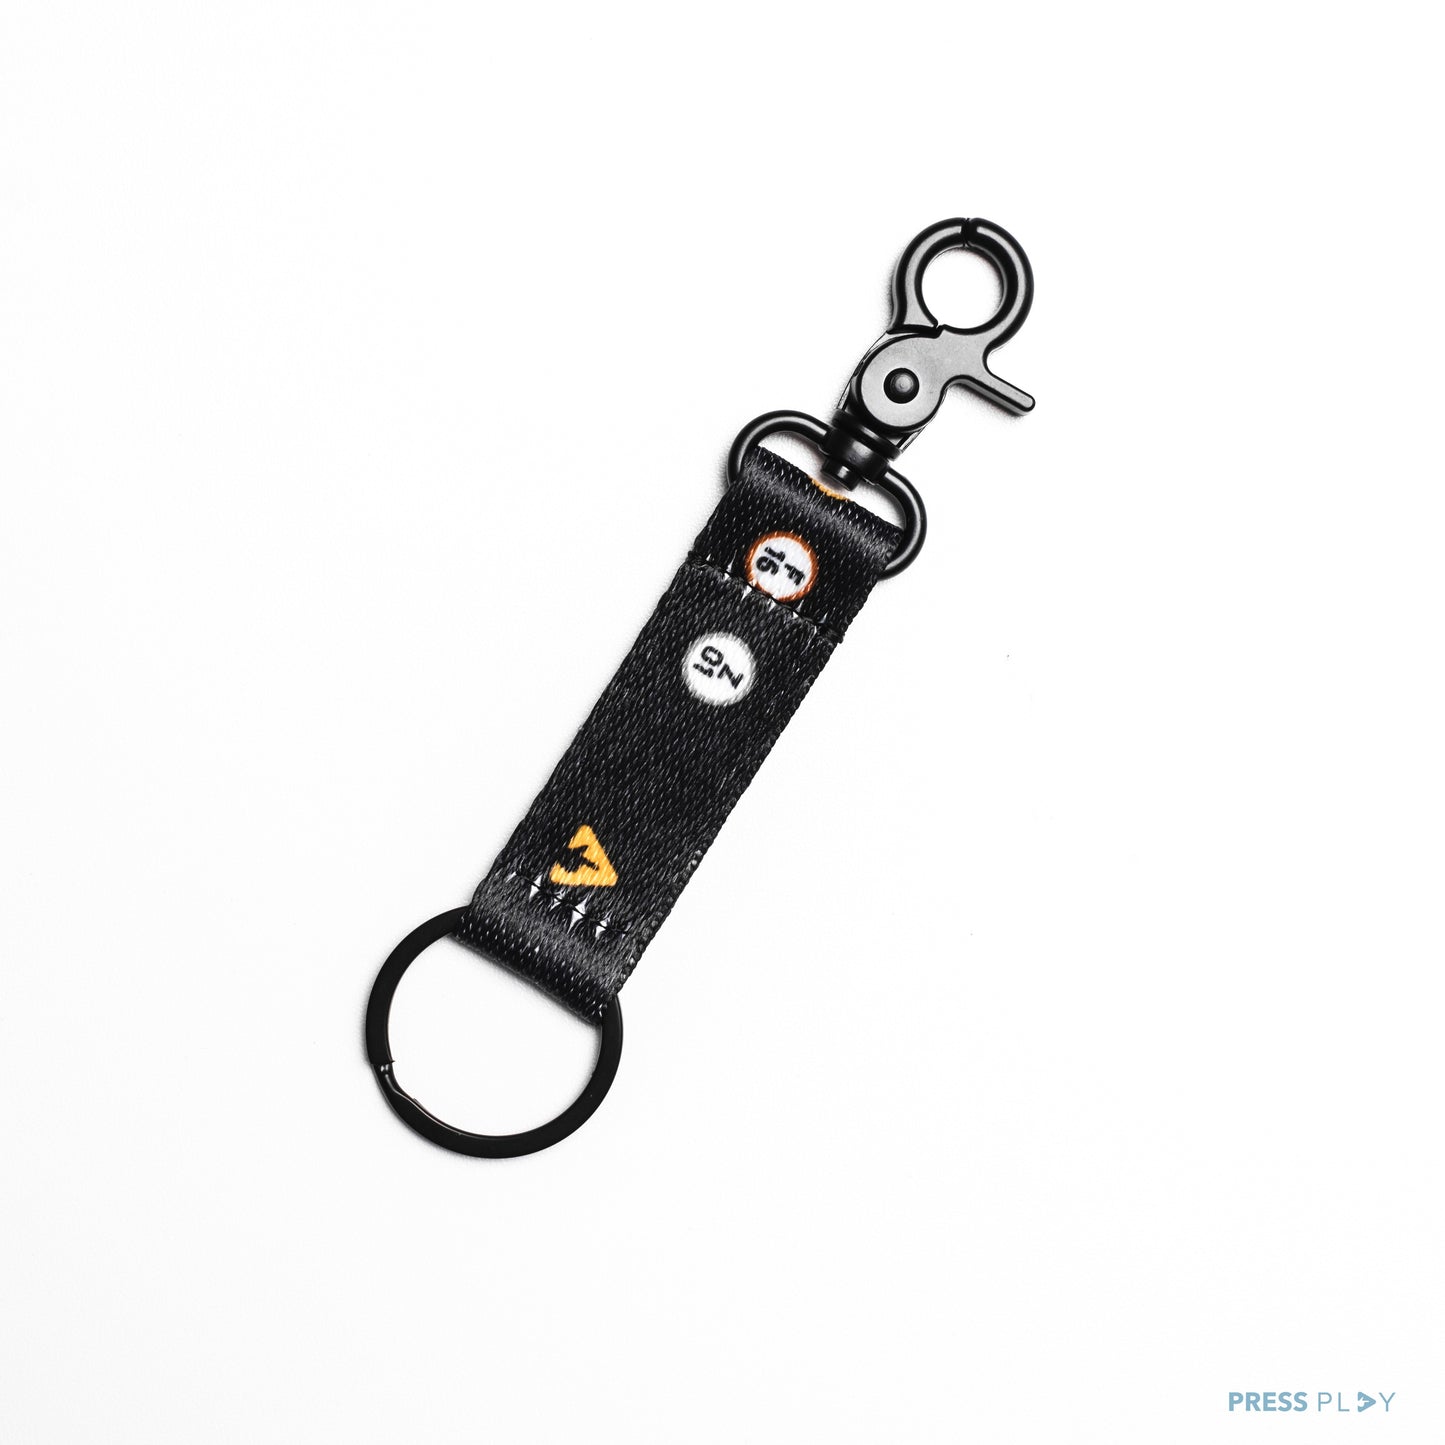 Press Play Keychain Key Holder